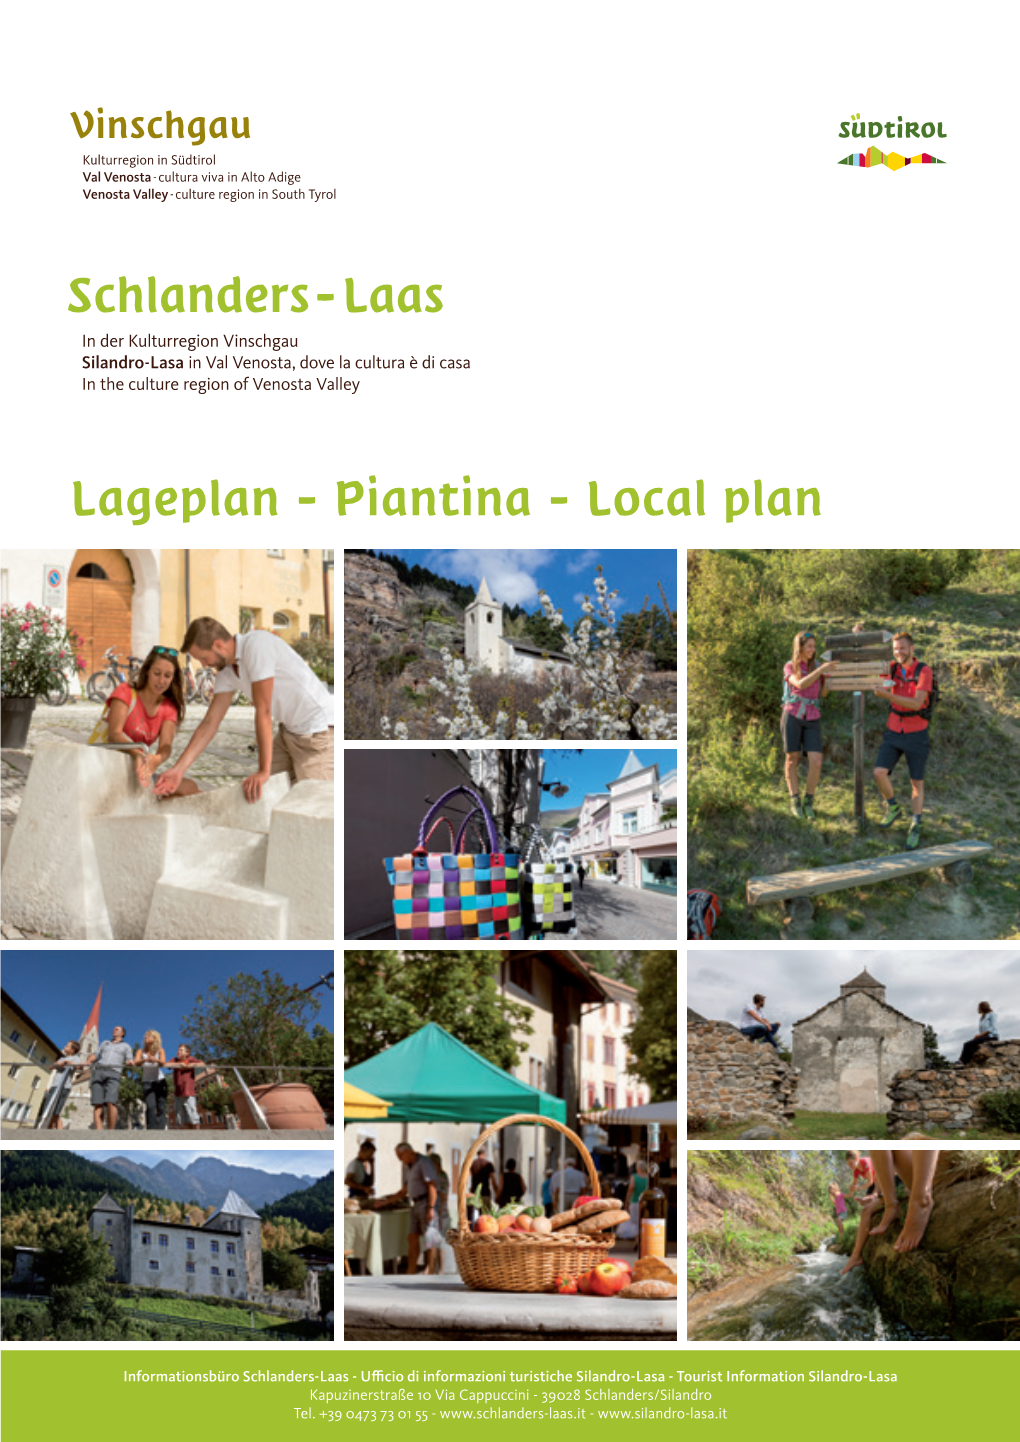 Schlanders-Laas­­ in Der Kulturregion Vinschgau Silandro-Lasa in Val Venosta, Dove La Cultura È Di Casa in the Culture Region of Venosta Valley